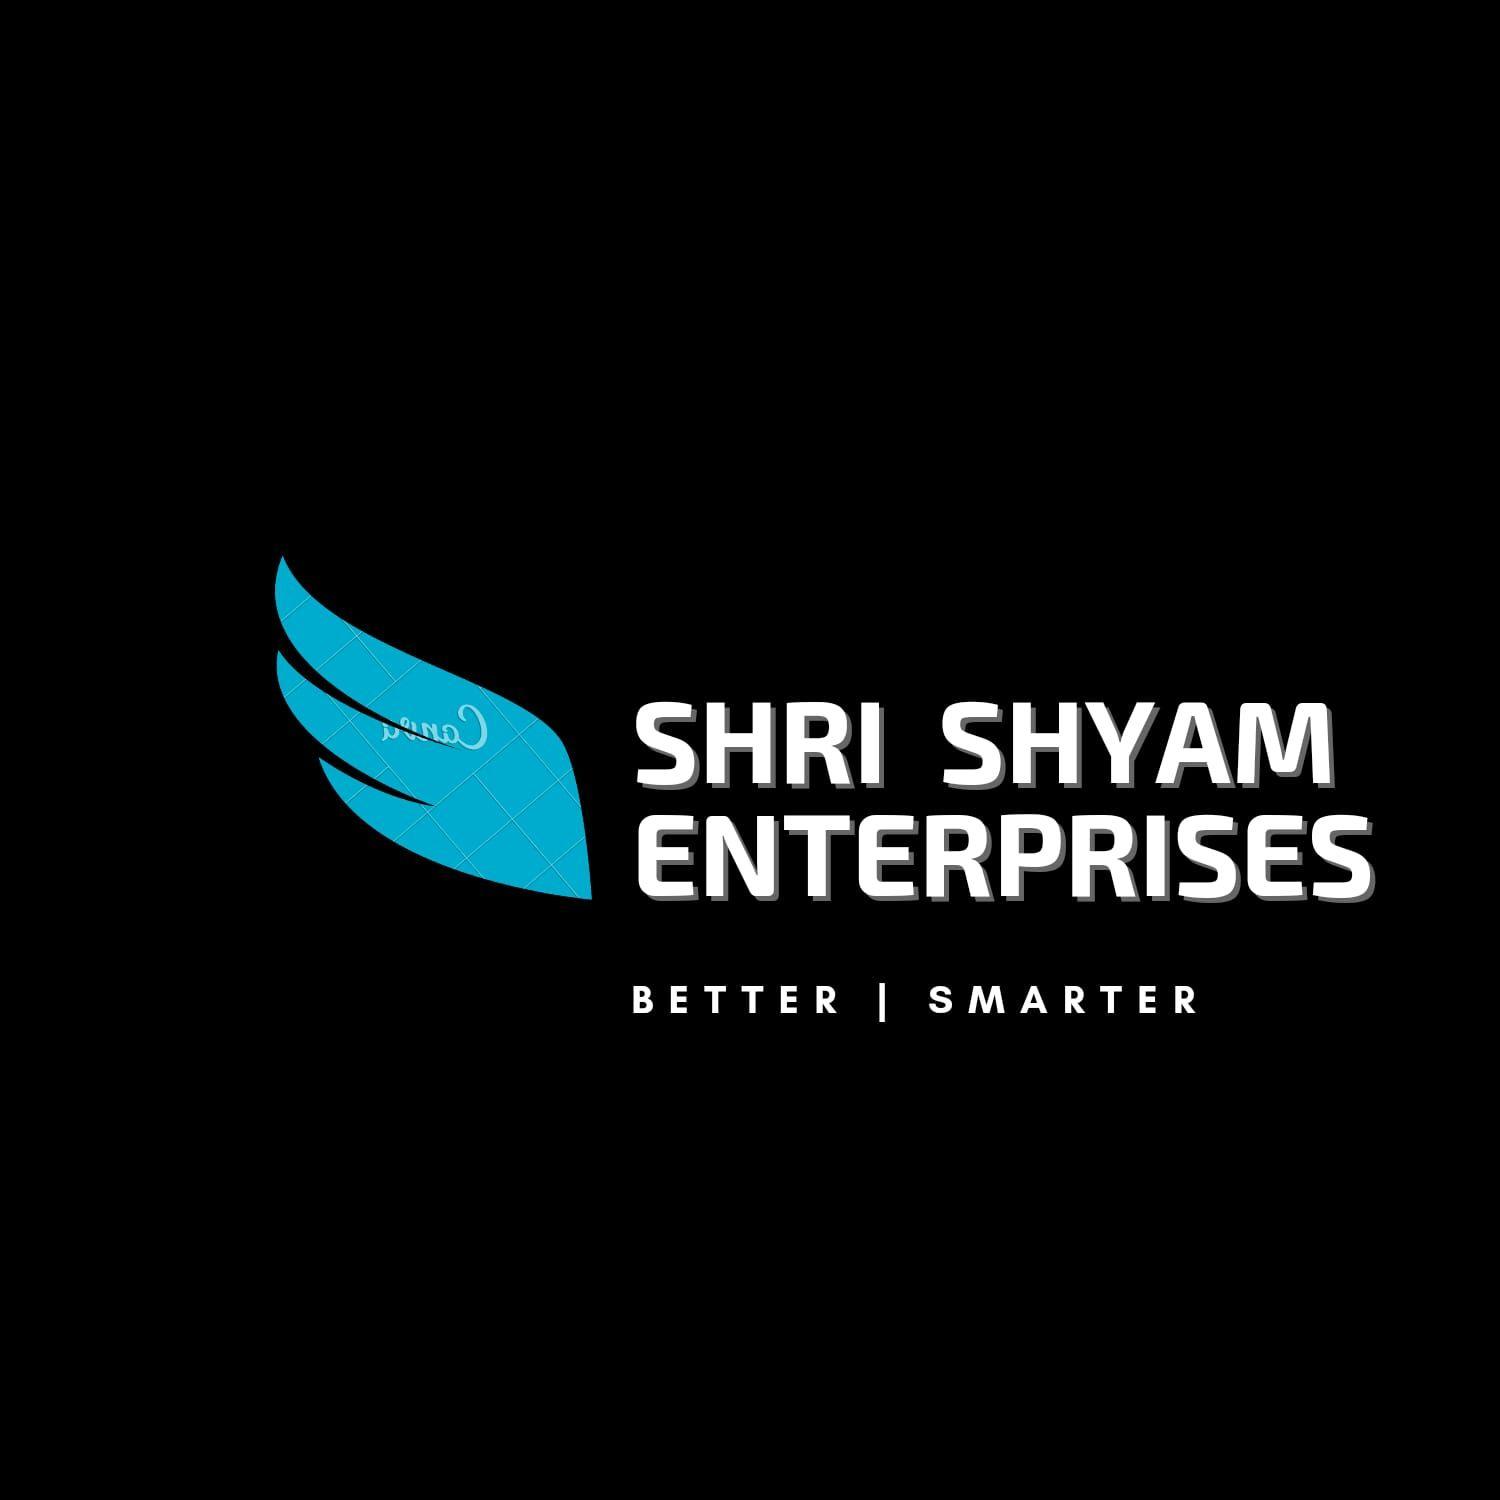 SHRI SHYAM ENTERPRISES